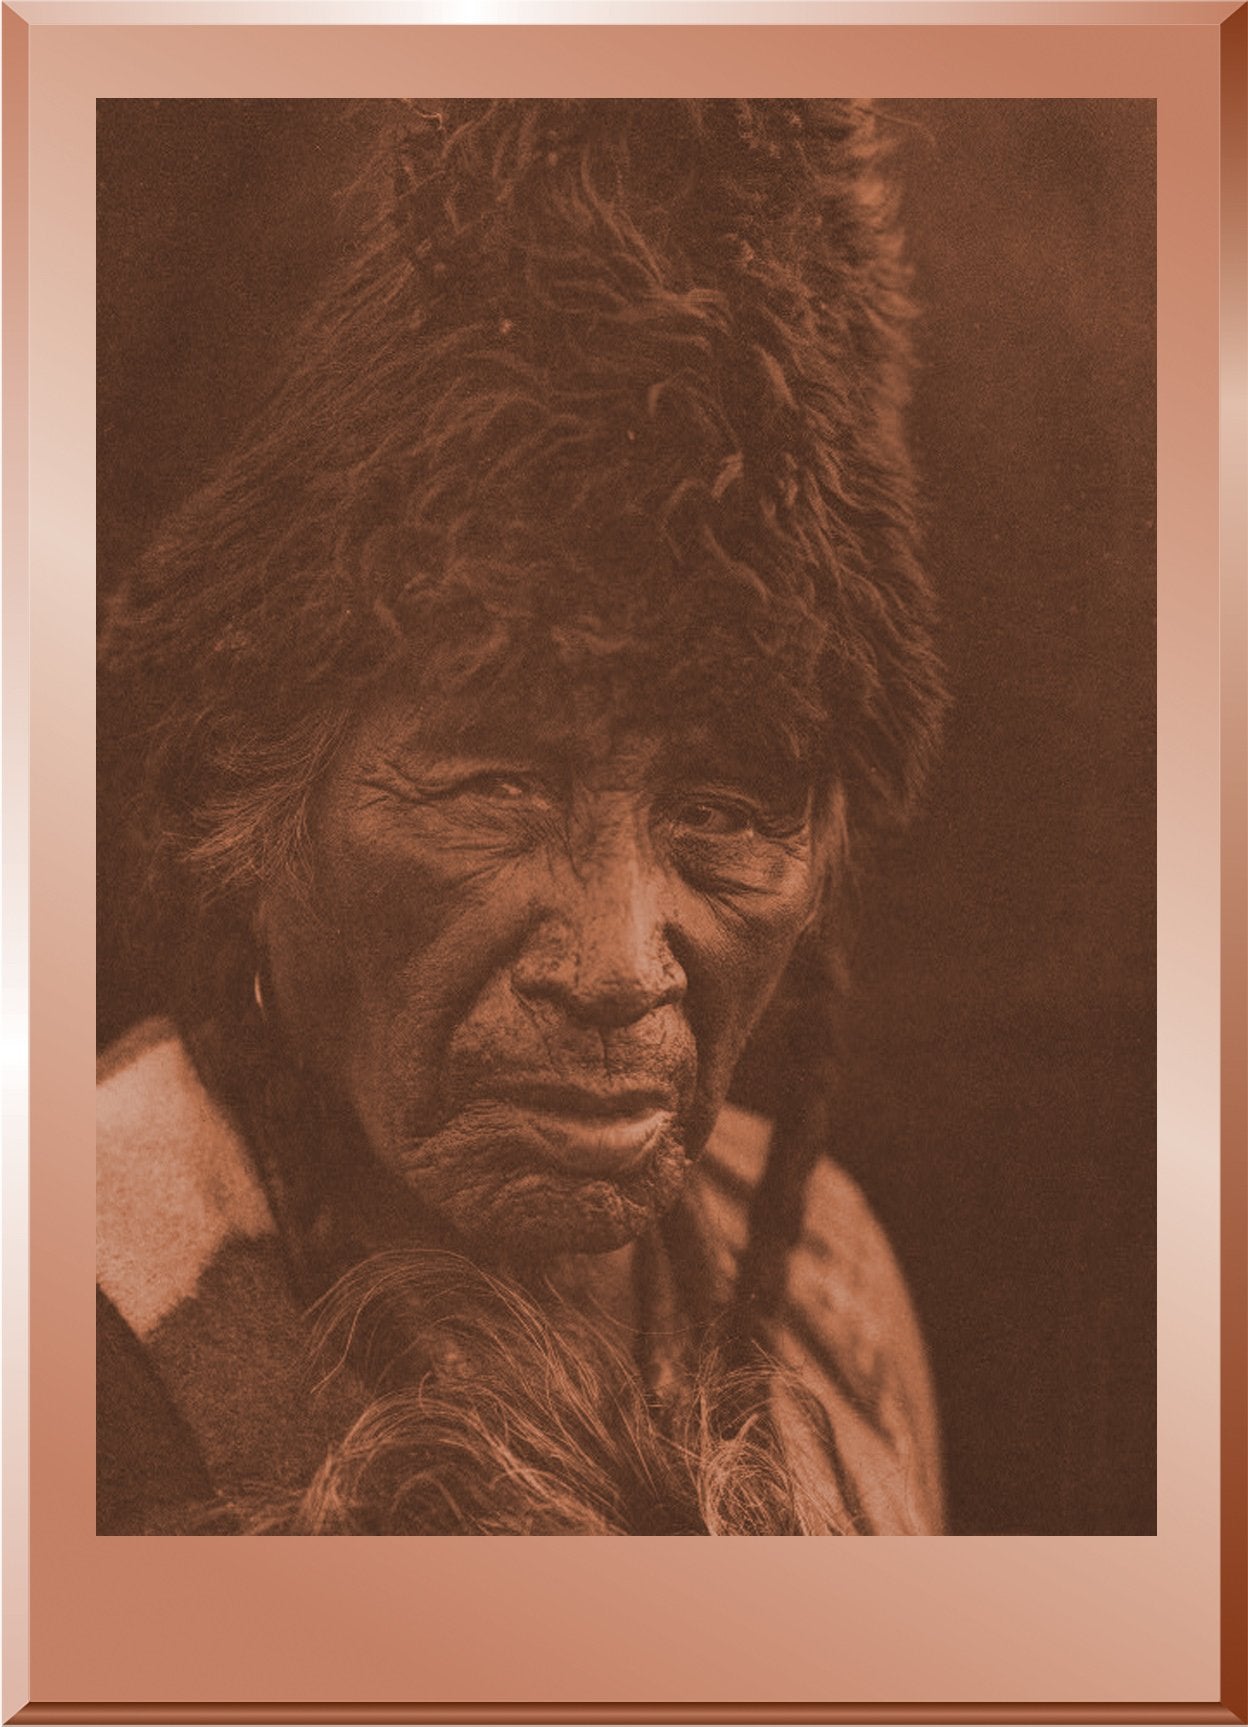 Oksoy-apiw ("Raw Eater Old Man") - Blackfoot